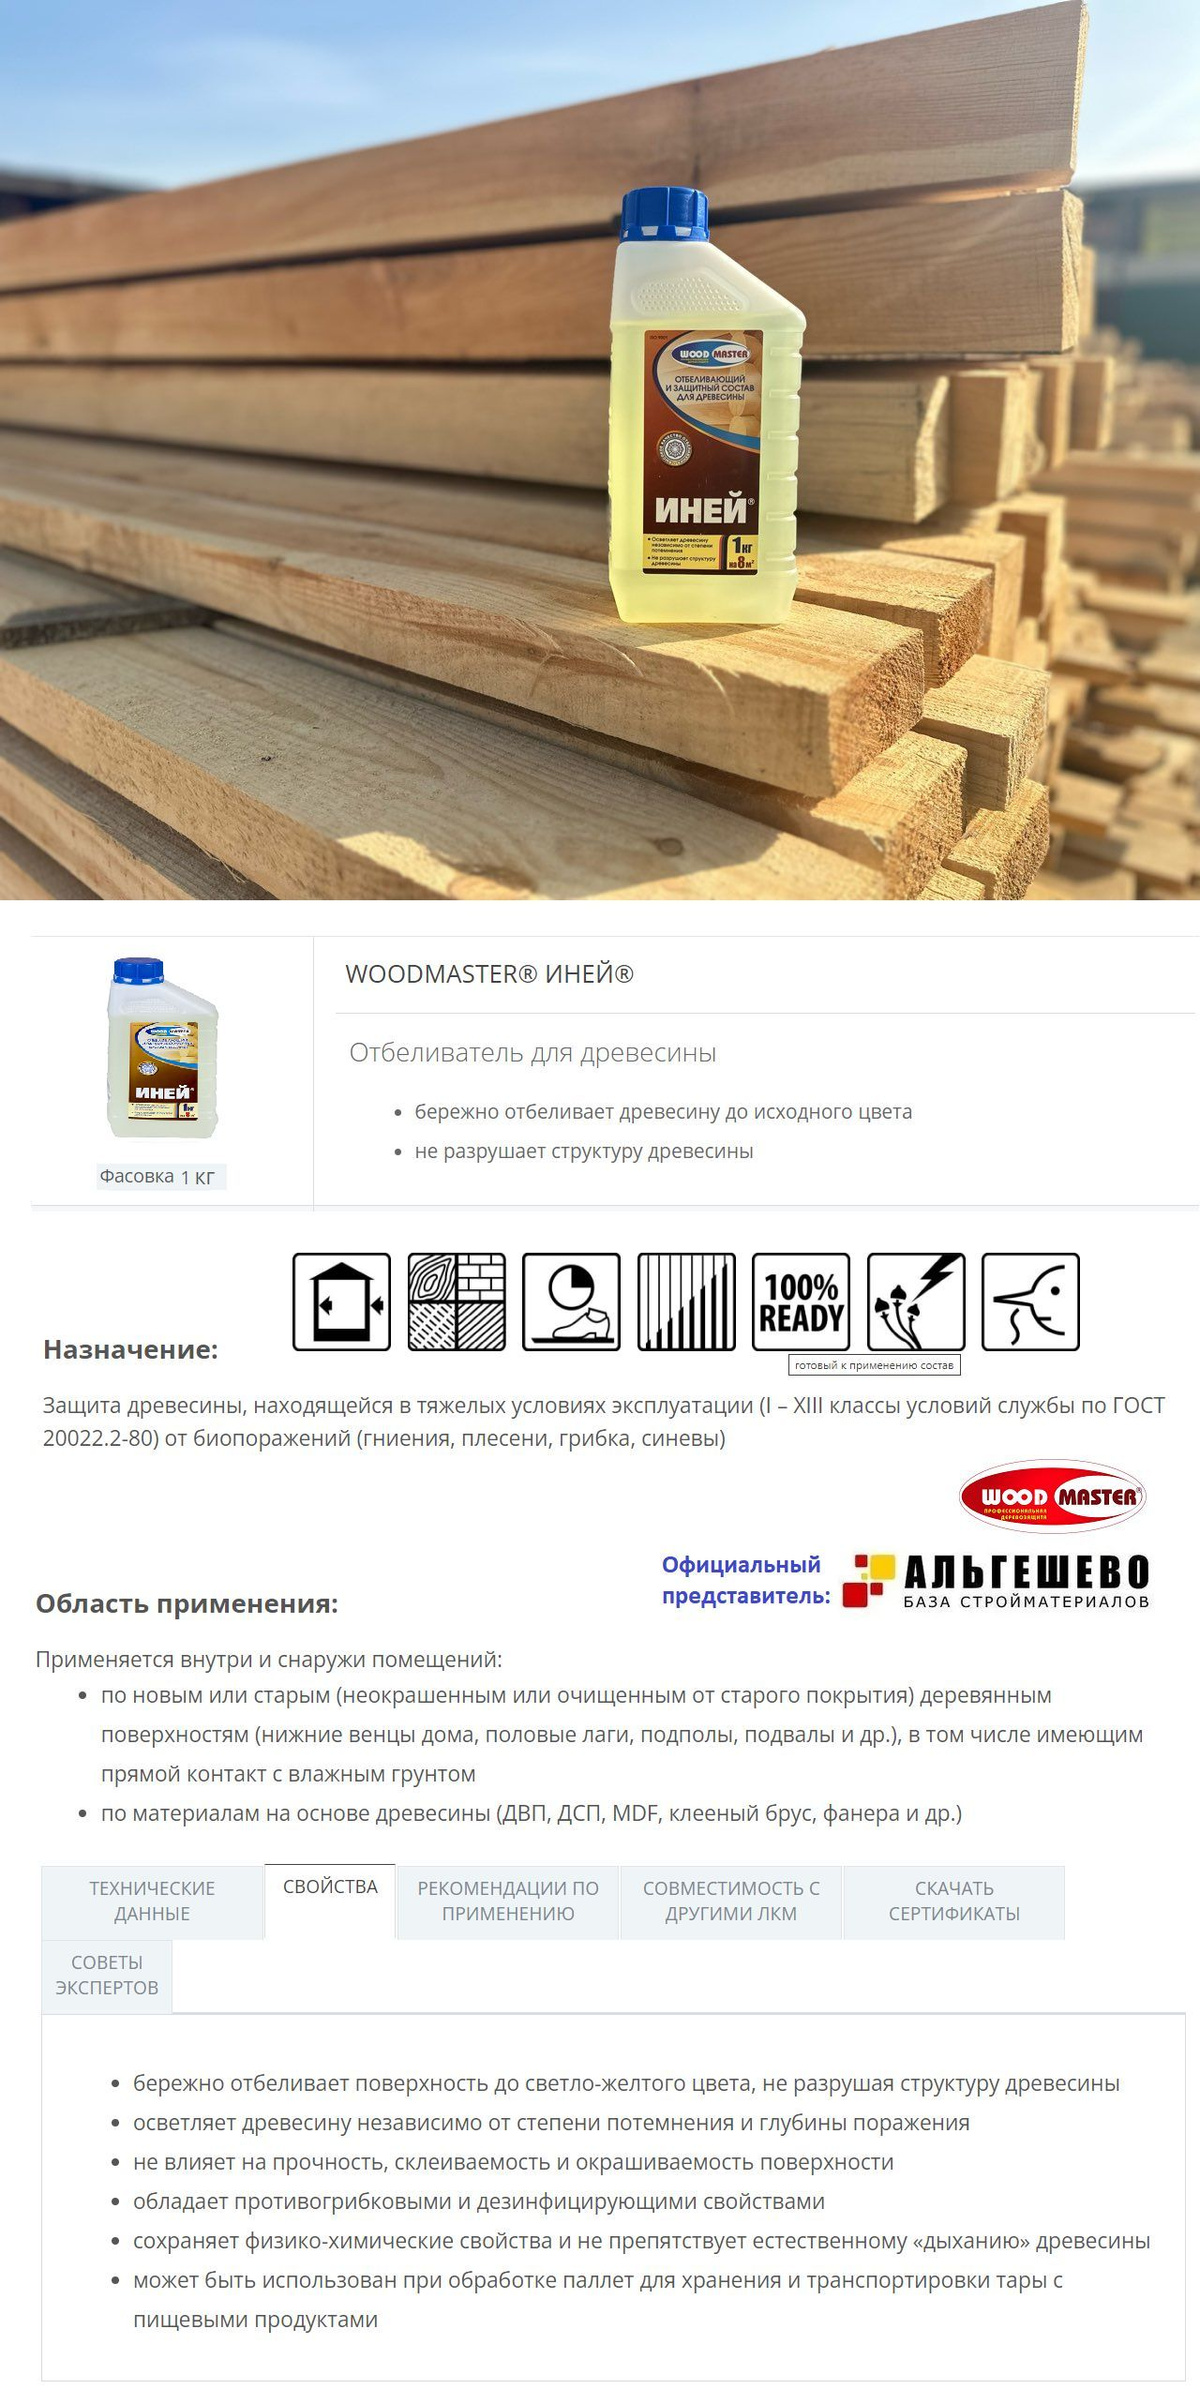 WOODMASTER ИНЕЙ Отбеливающий состав для древесины